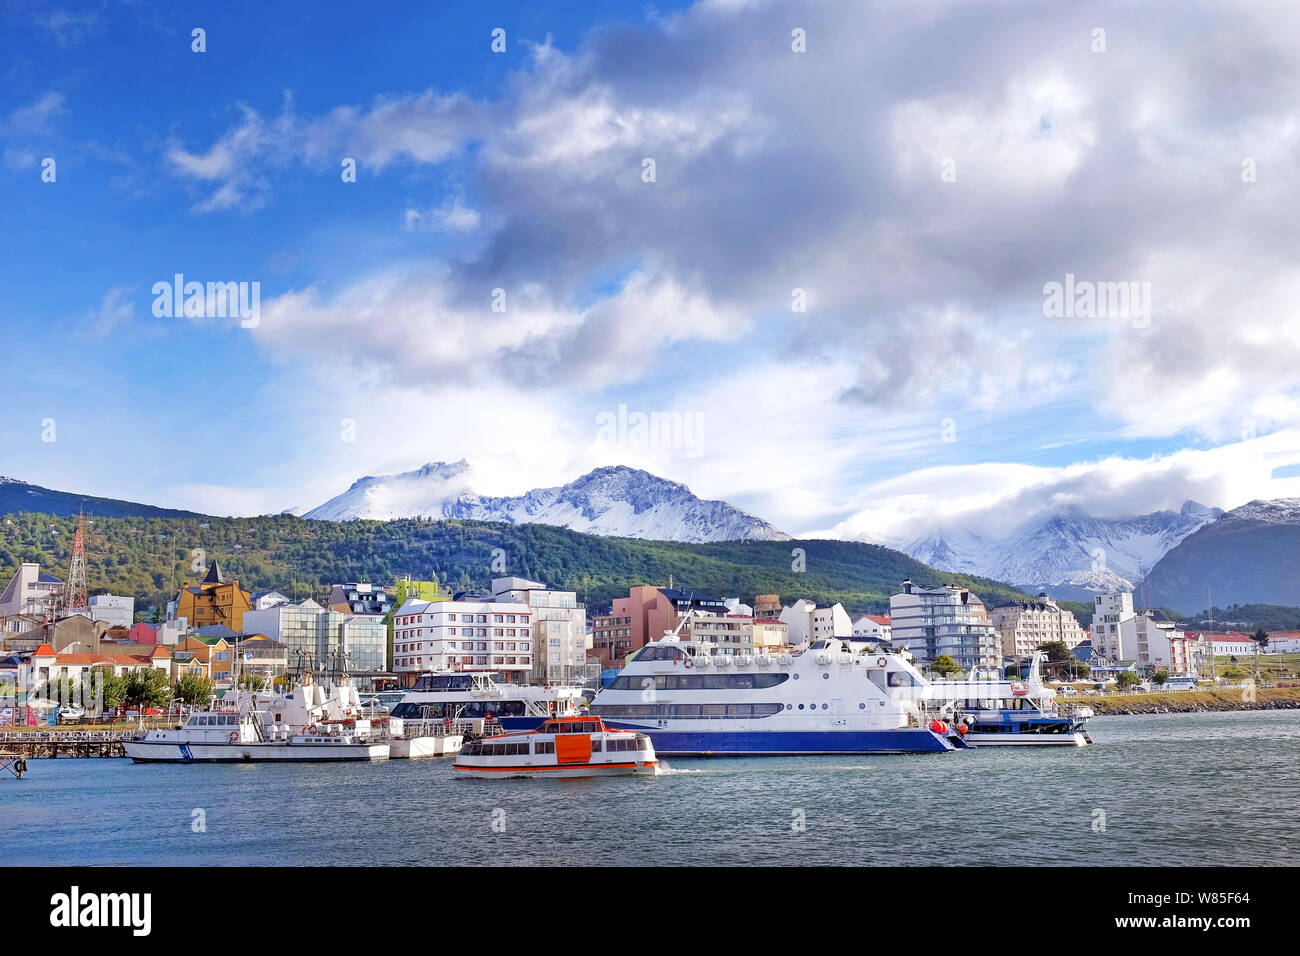 Ansicht der Schiffe in den Hafen von Ushuaia gegen eine Landschaft, die die Stadt und die Berge mit Schnee bedeckt, durch einen blauen Himmel mit Whi umgeben Stockfoto